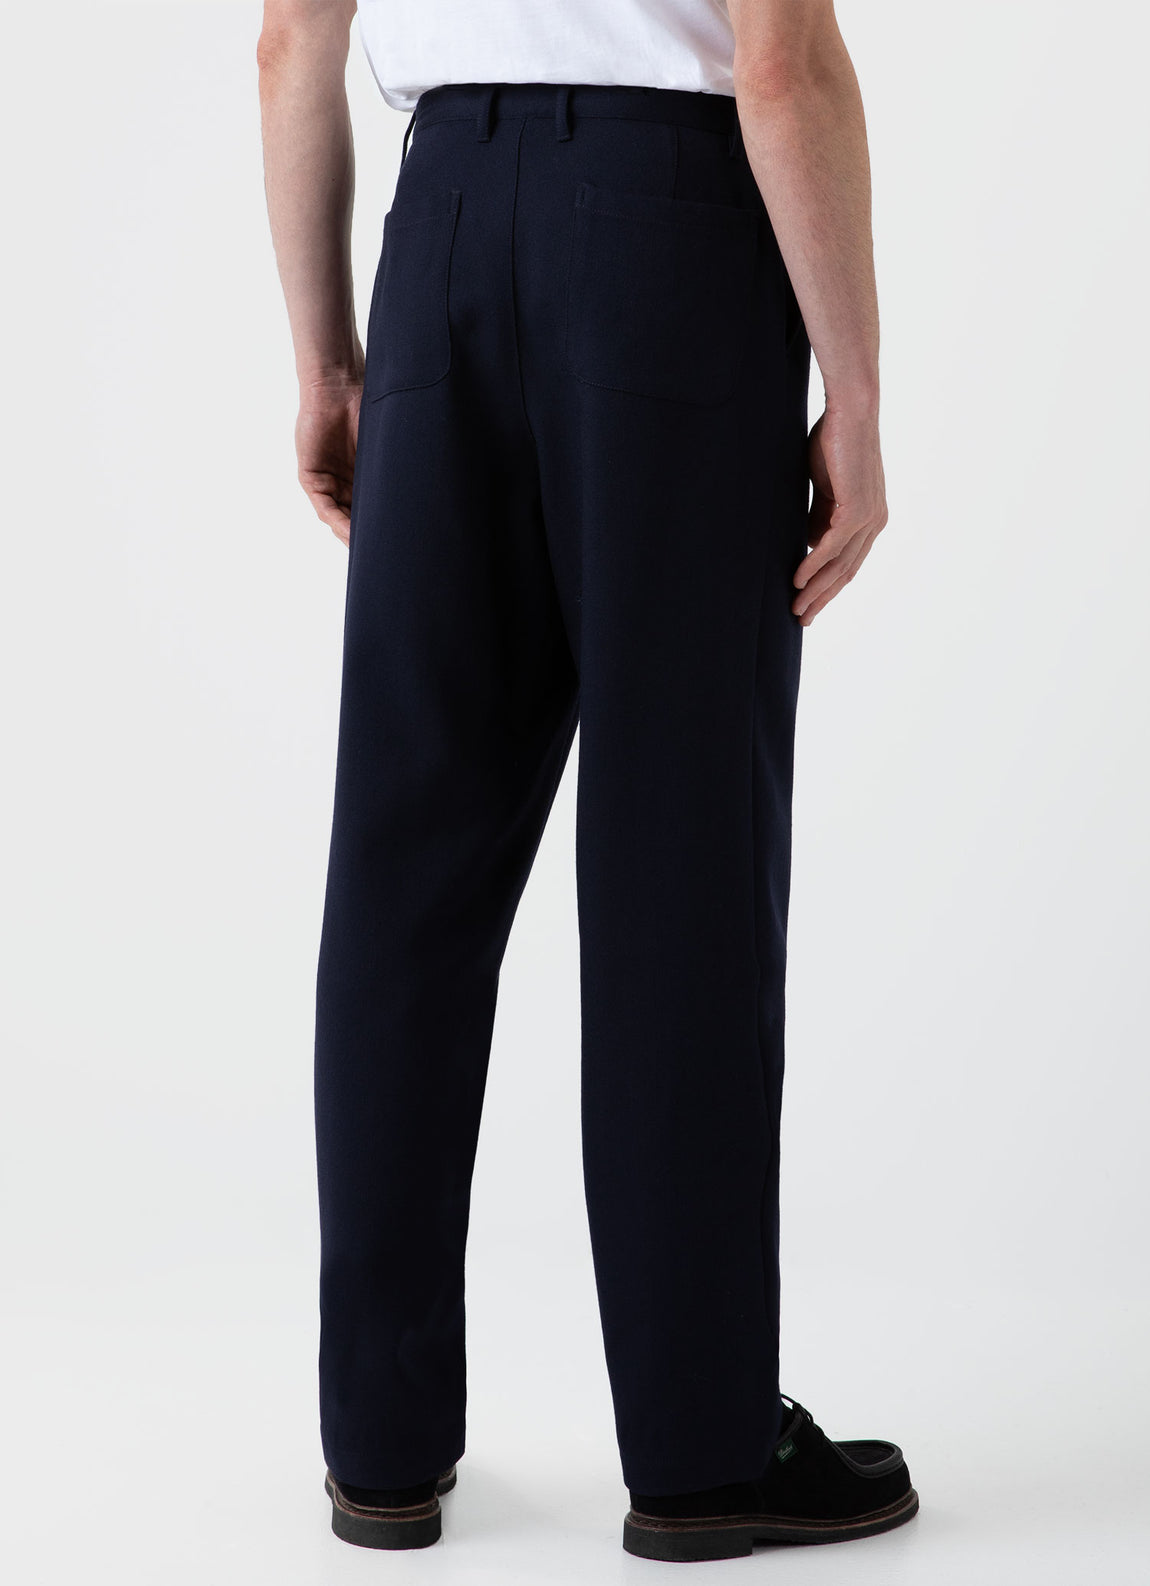 Men's Wool Twill Chore Trousers in Dark Navy | Sunspel